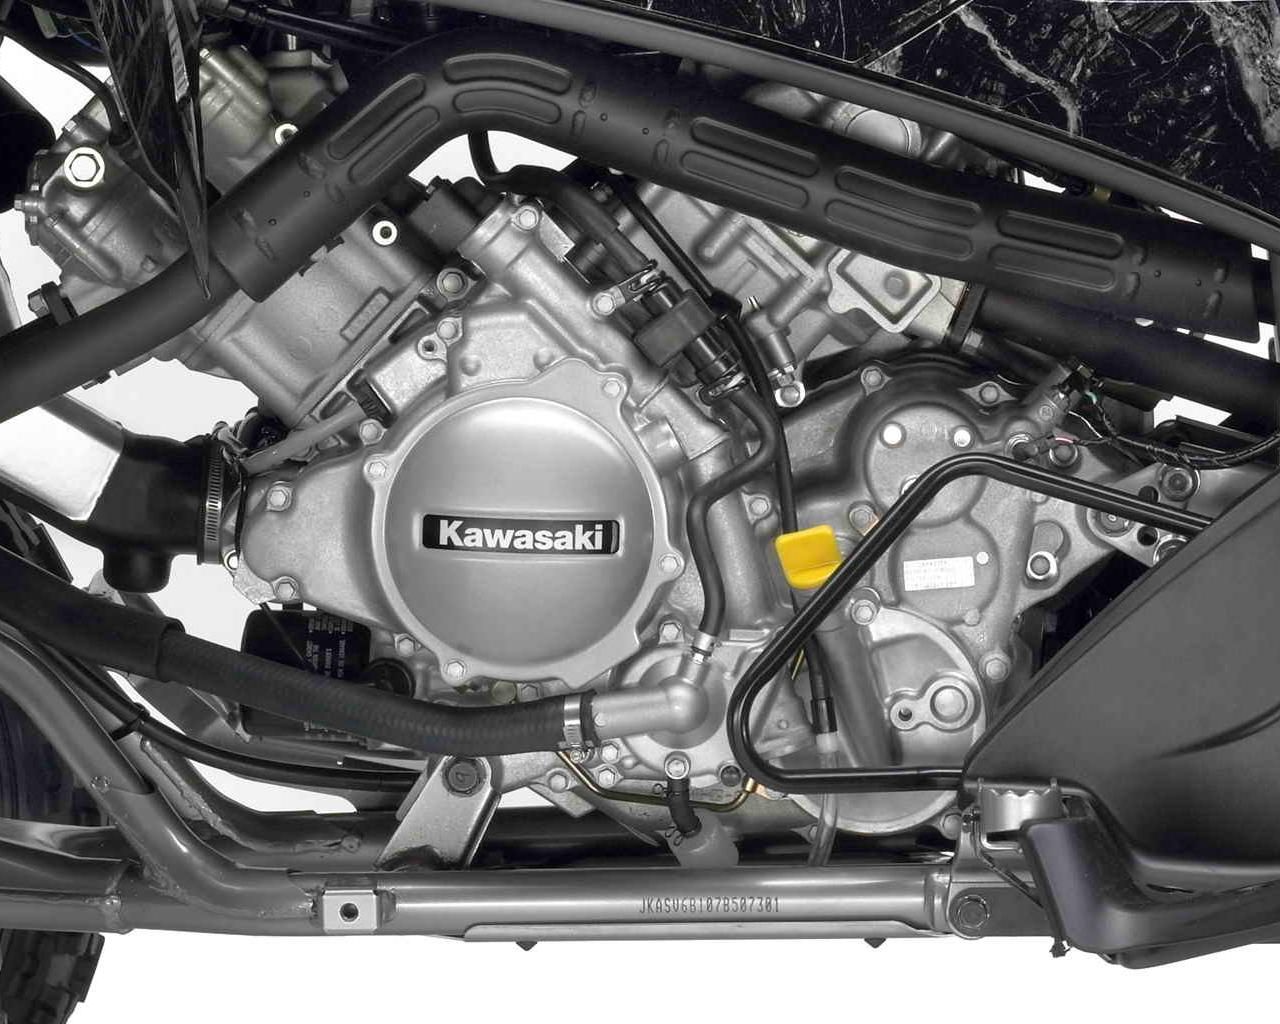 2007 Kawasaki KFX700 engine